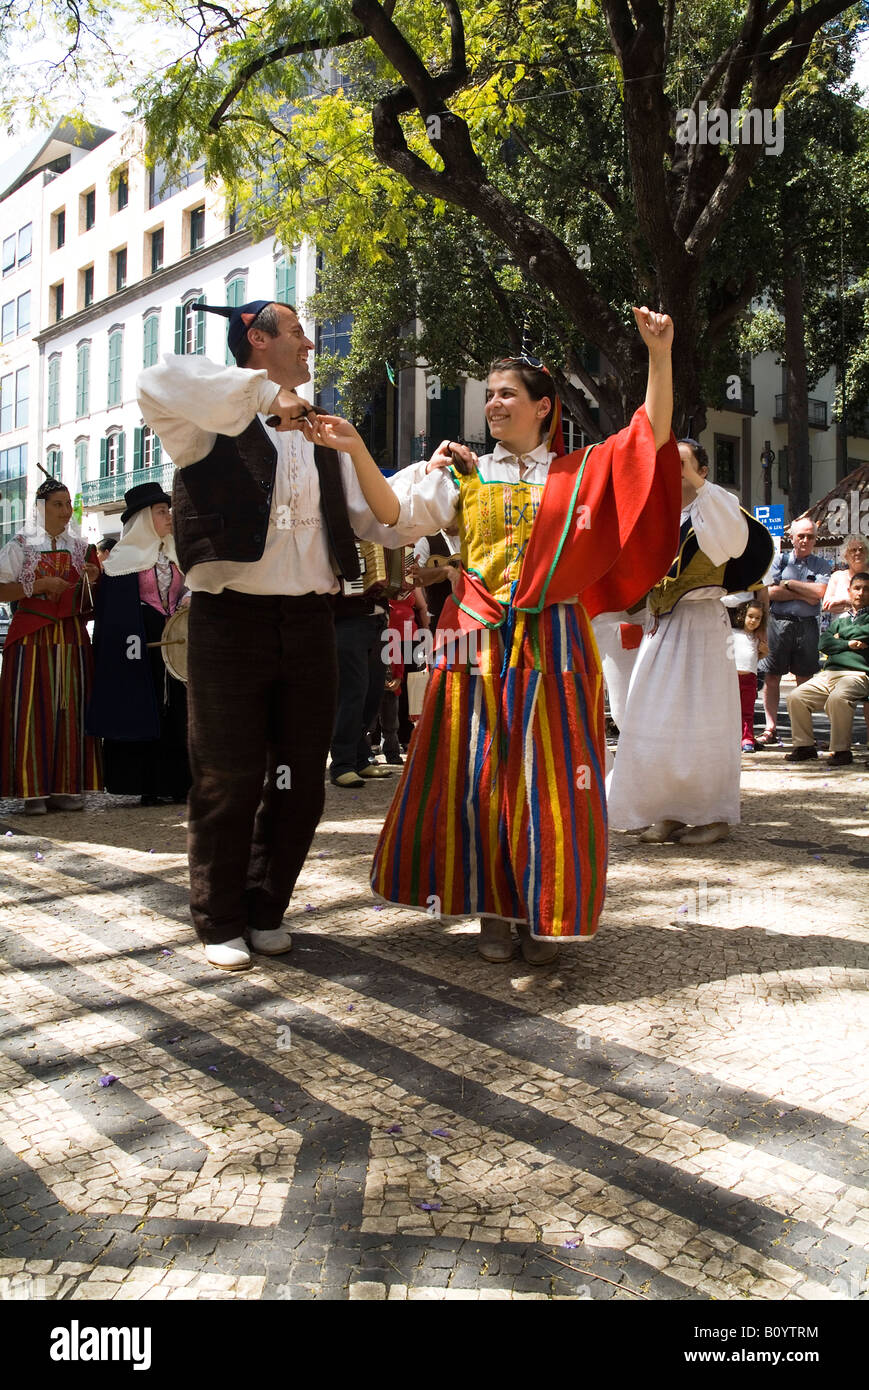 dh Festival DE fleurs FUNCHAL MADÈRE spectacle de danse traditionnelle costume historique couple danse folklorique 2 hommes femmes deux danseurs traditionnels personnes Banque D'Images